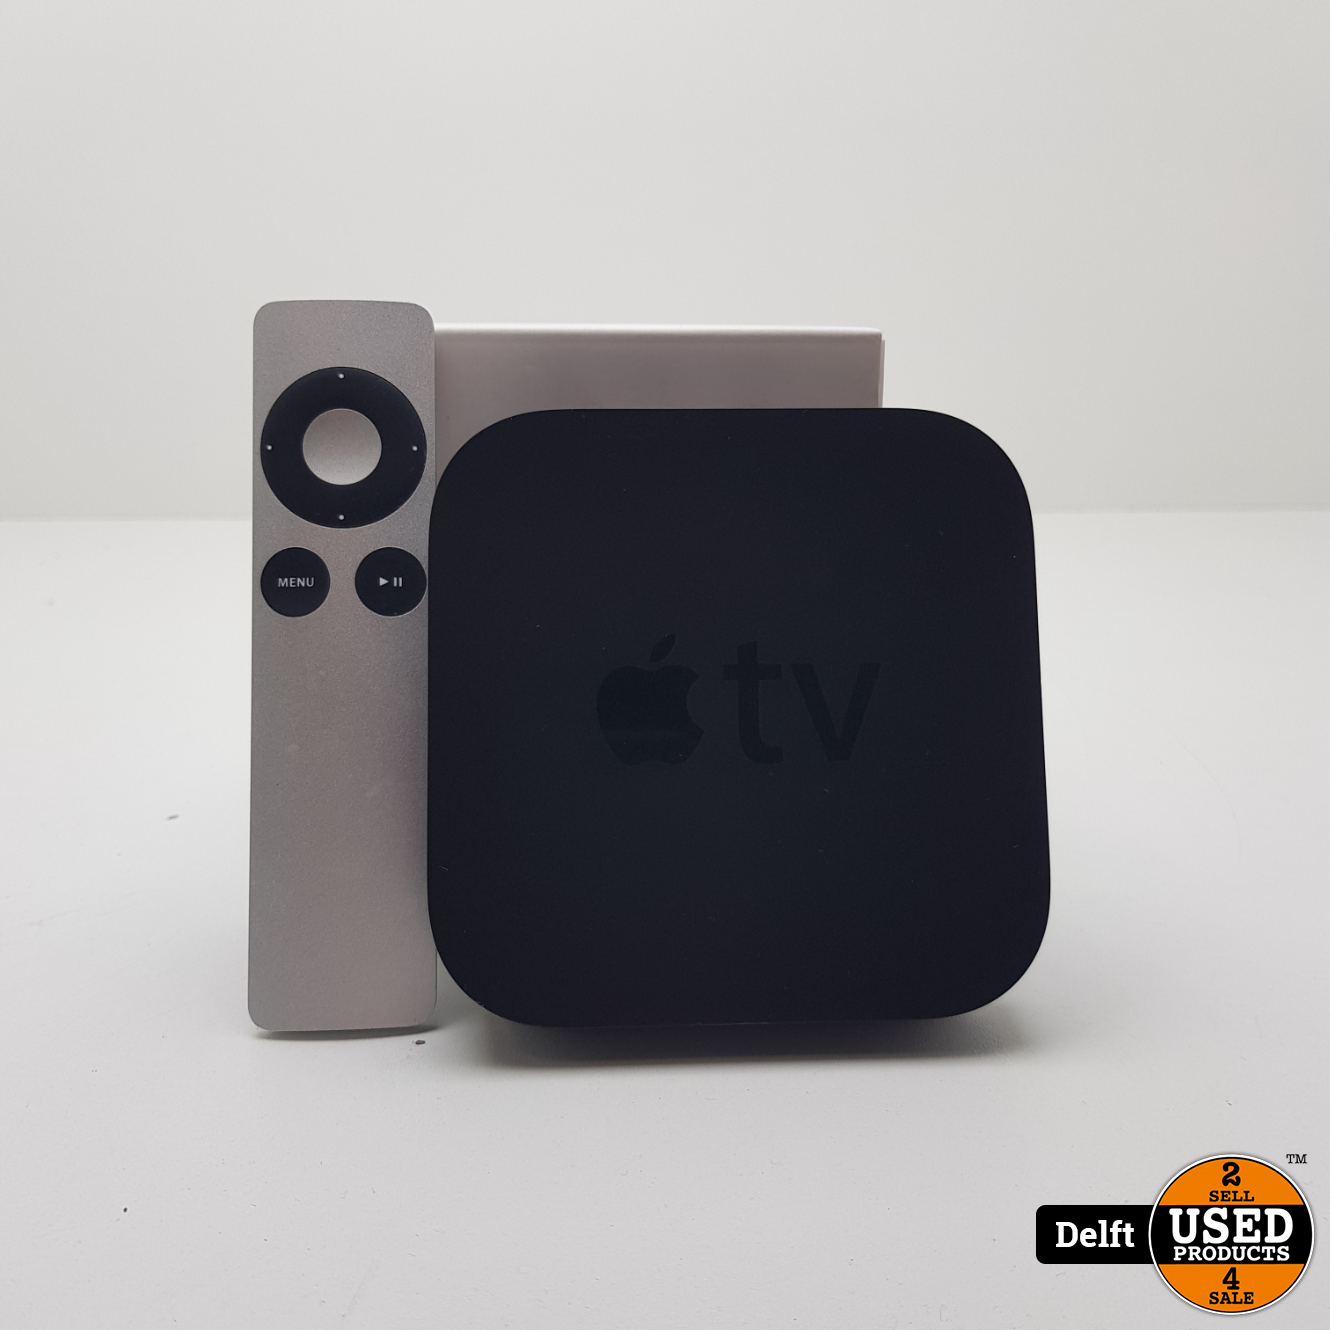 Hechting De kamer schoonmaken Manoeuvreren Apple Tv 3 nette staat garantie - Used Products Delft